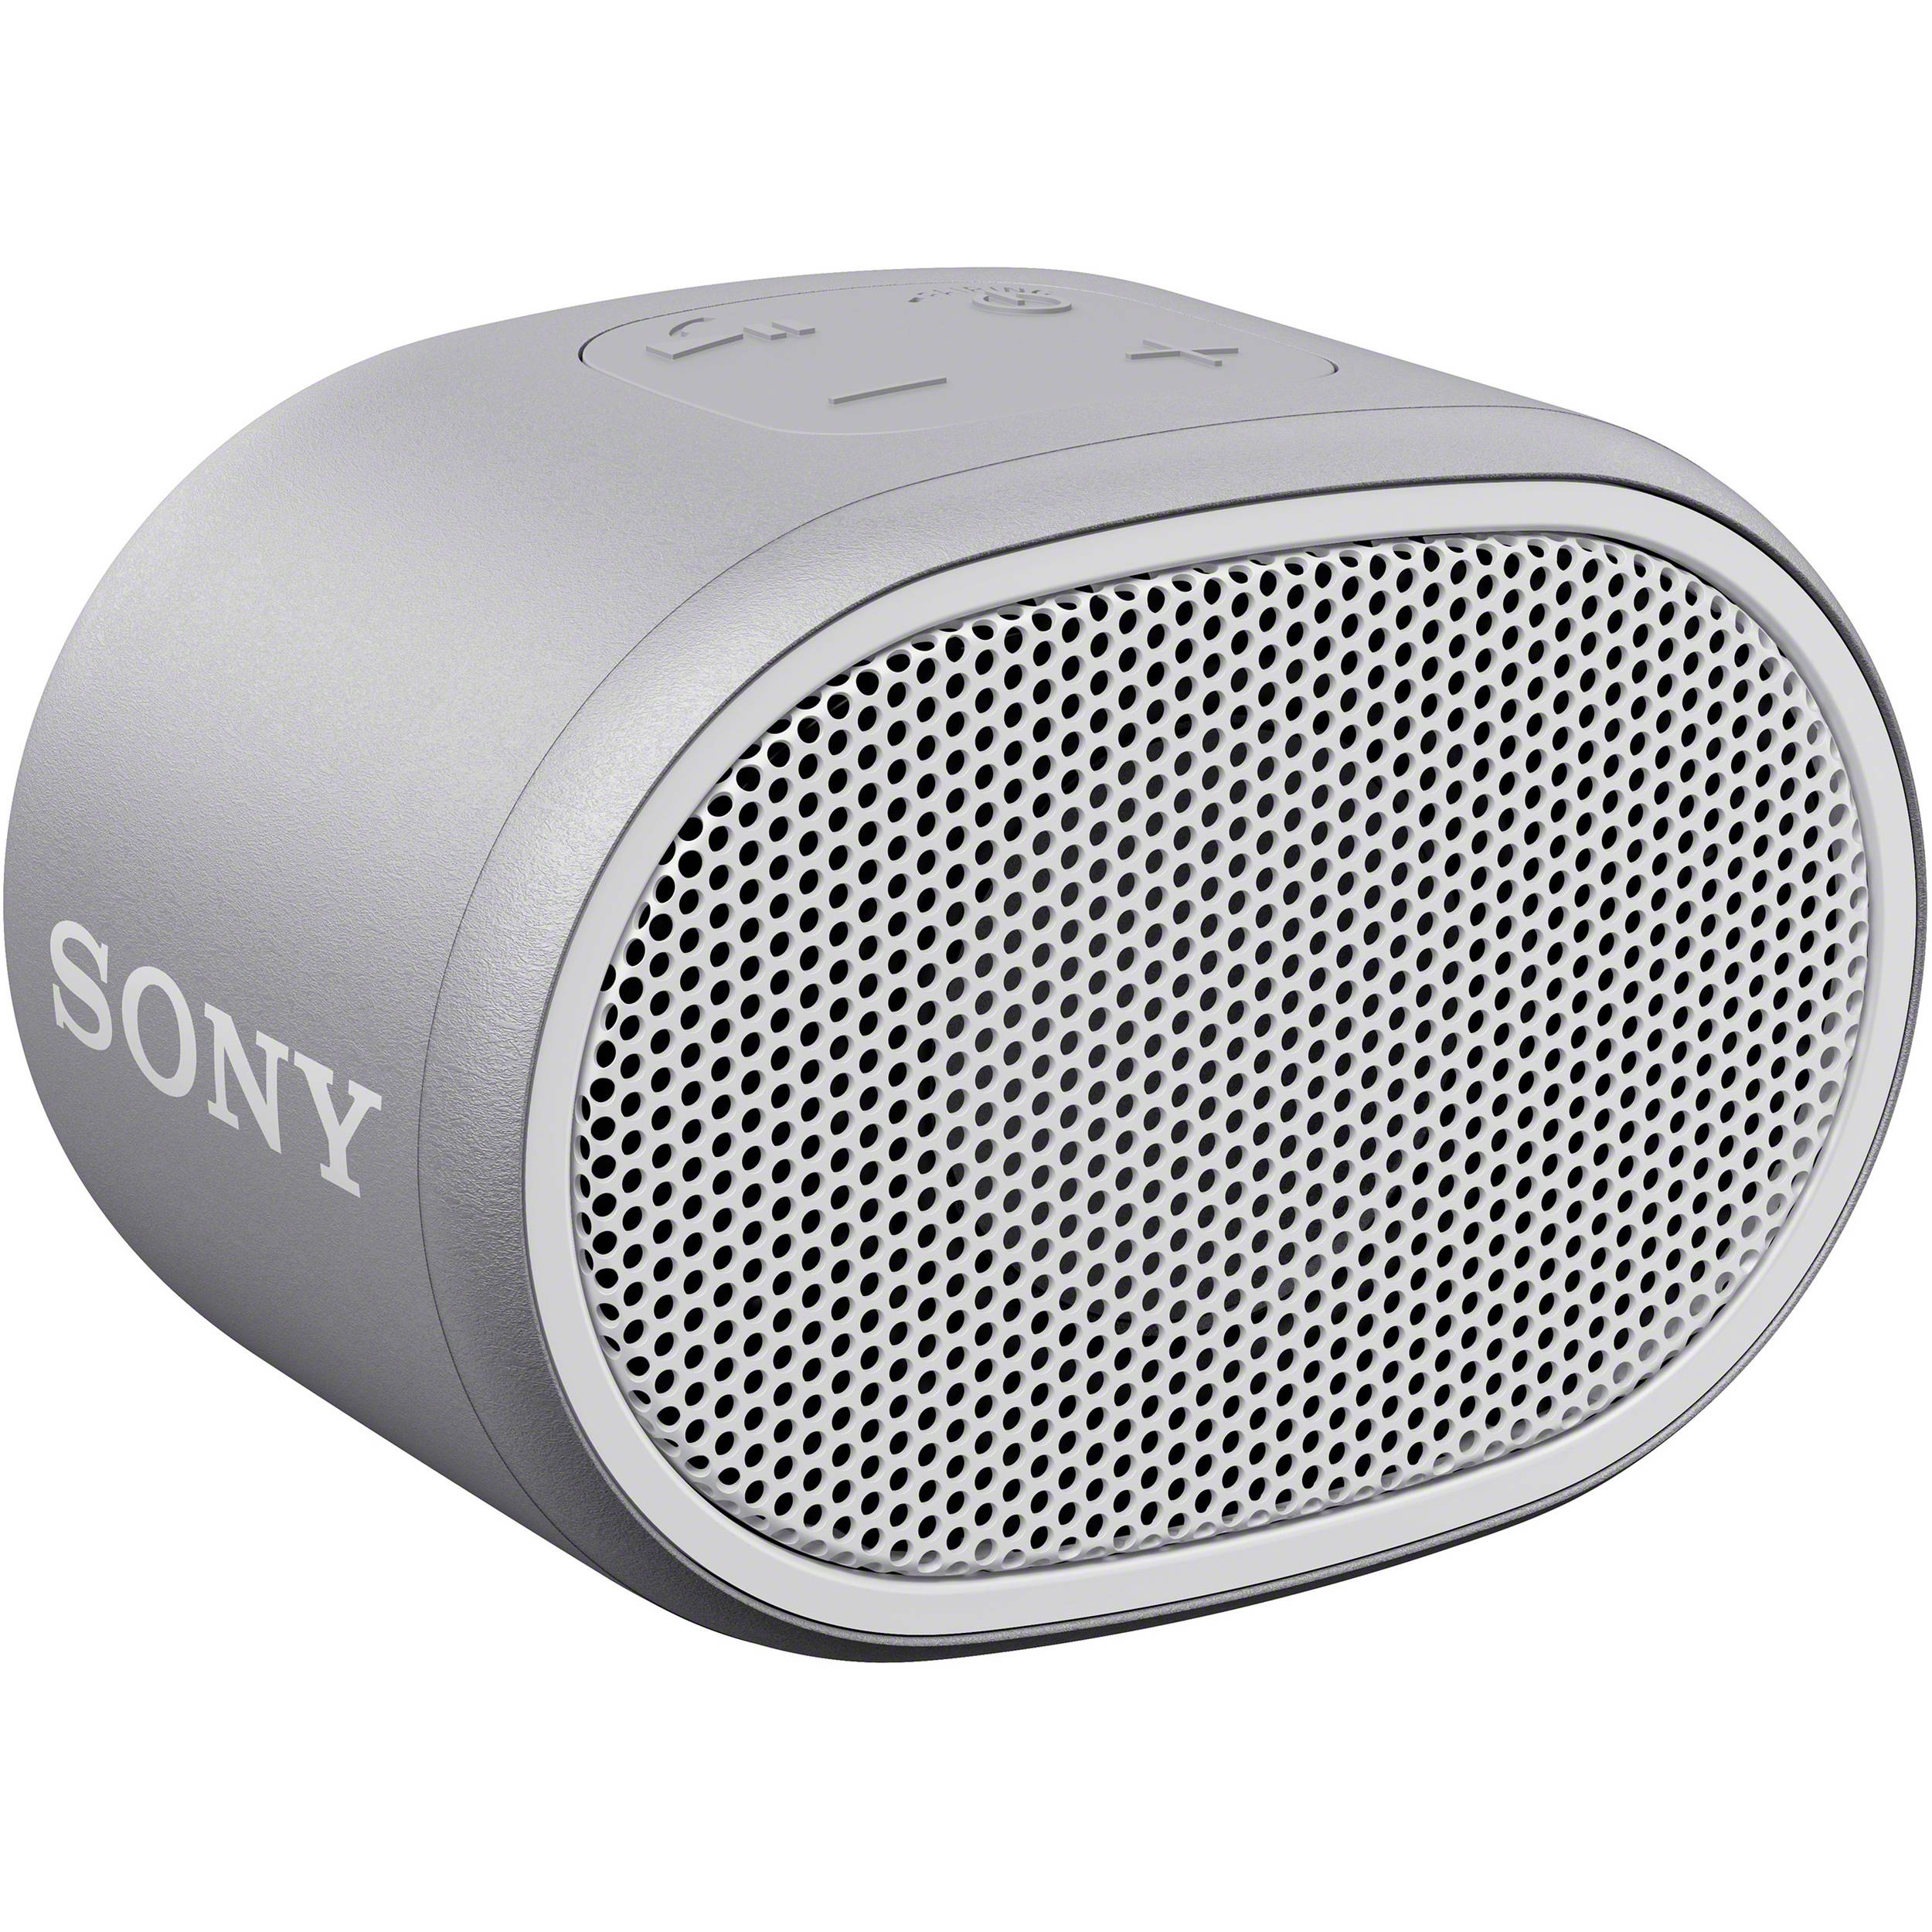 sony wireless bluetooth speaker